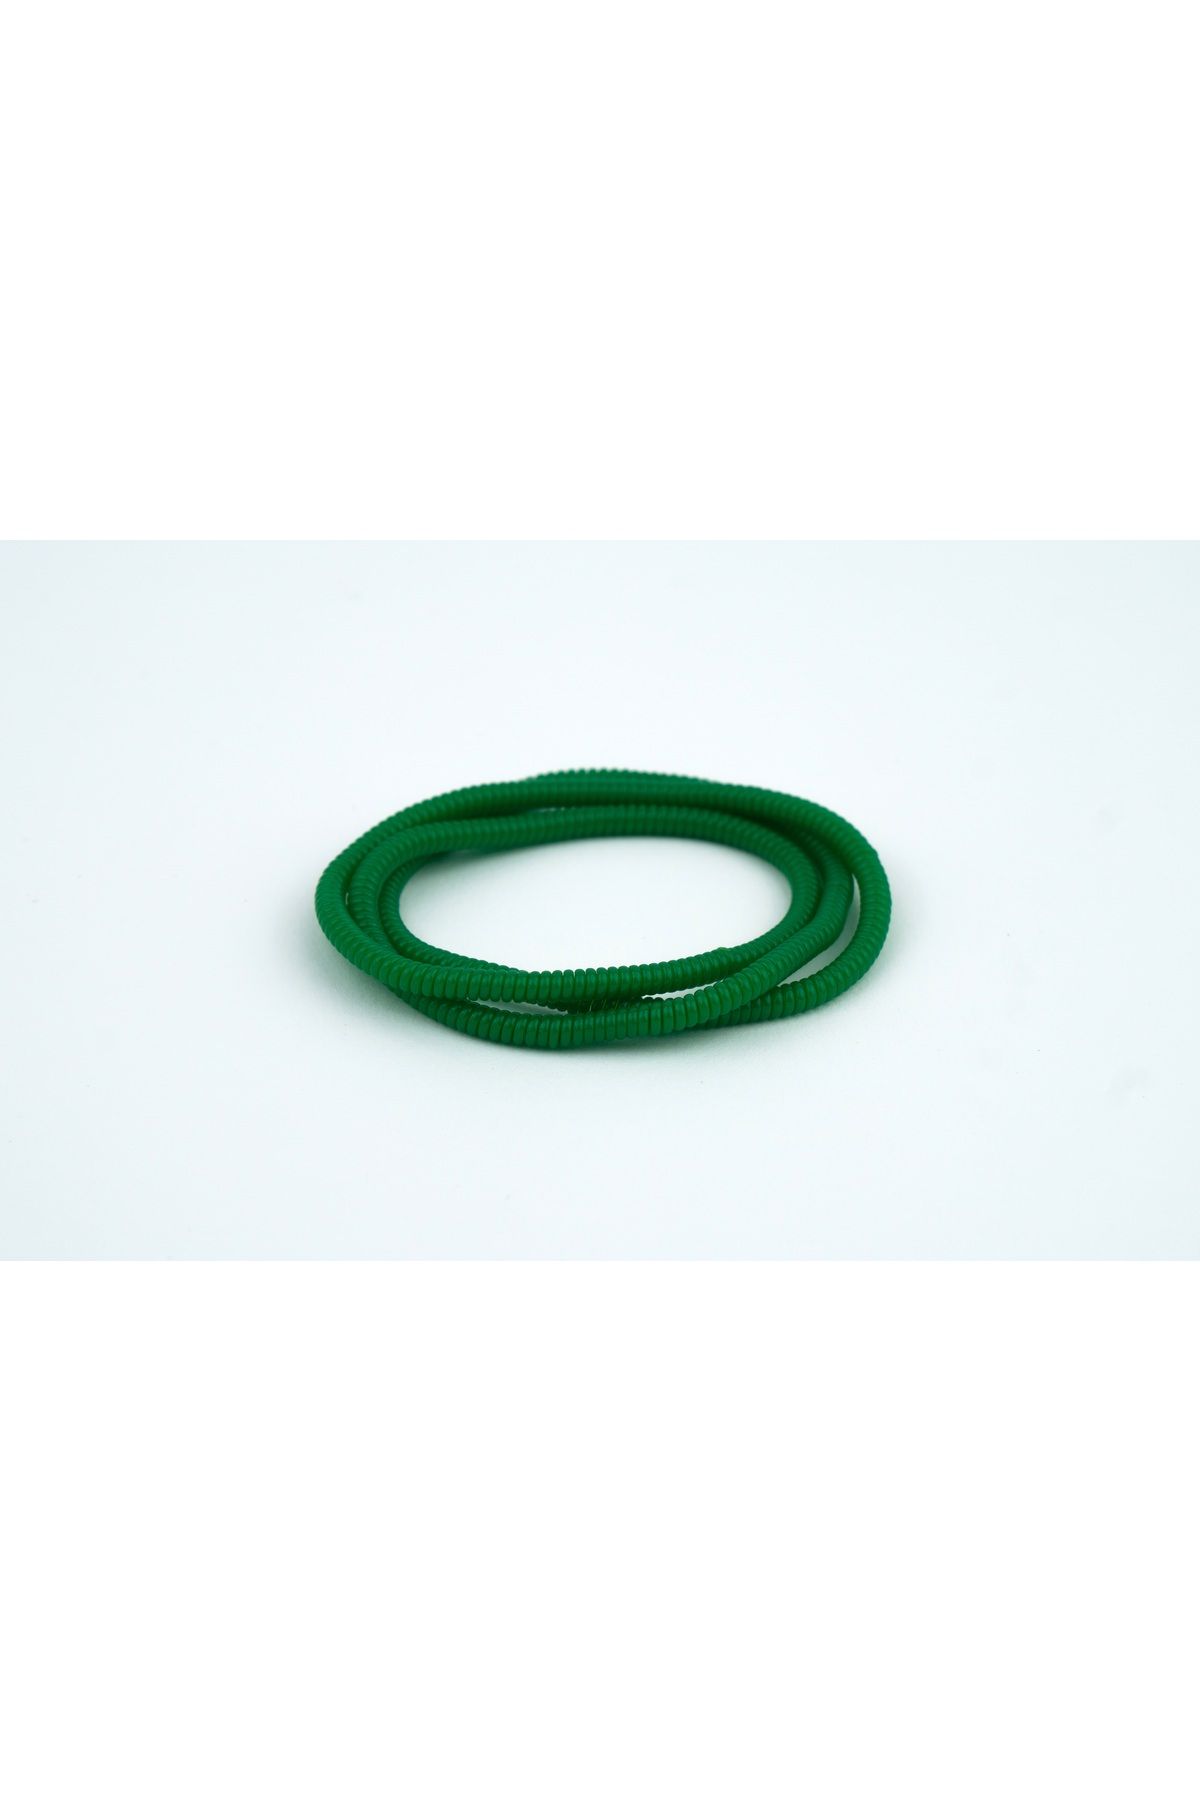 Spelt Kulaklık Kablosu Ince Kablo Kordon Koruyucu Spiral Sarma Kılıf Koruma Koyu Yeşil 50cm 4 Adet